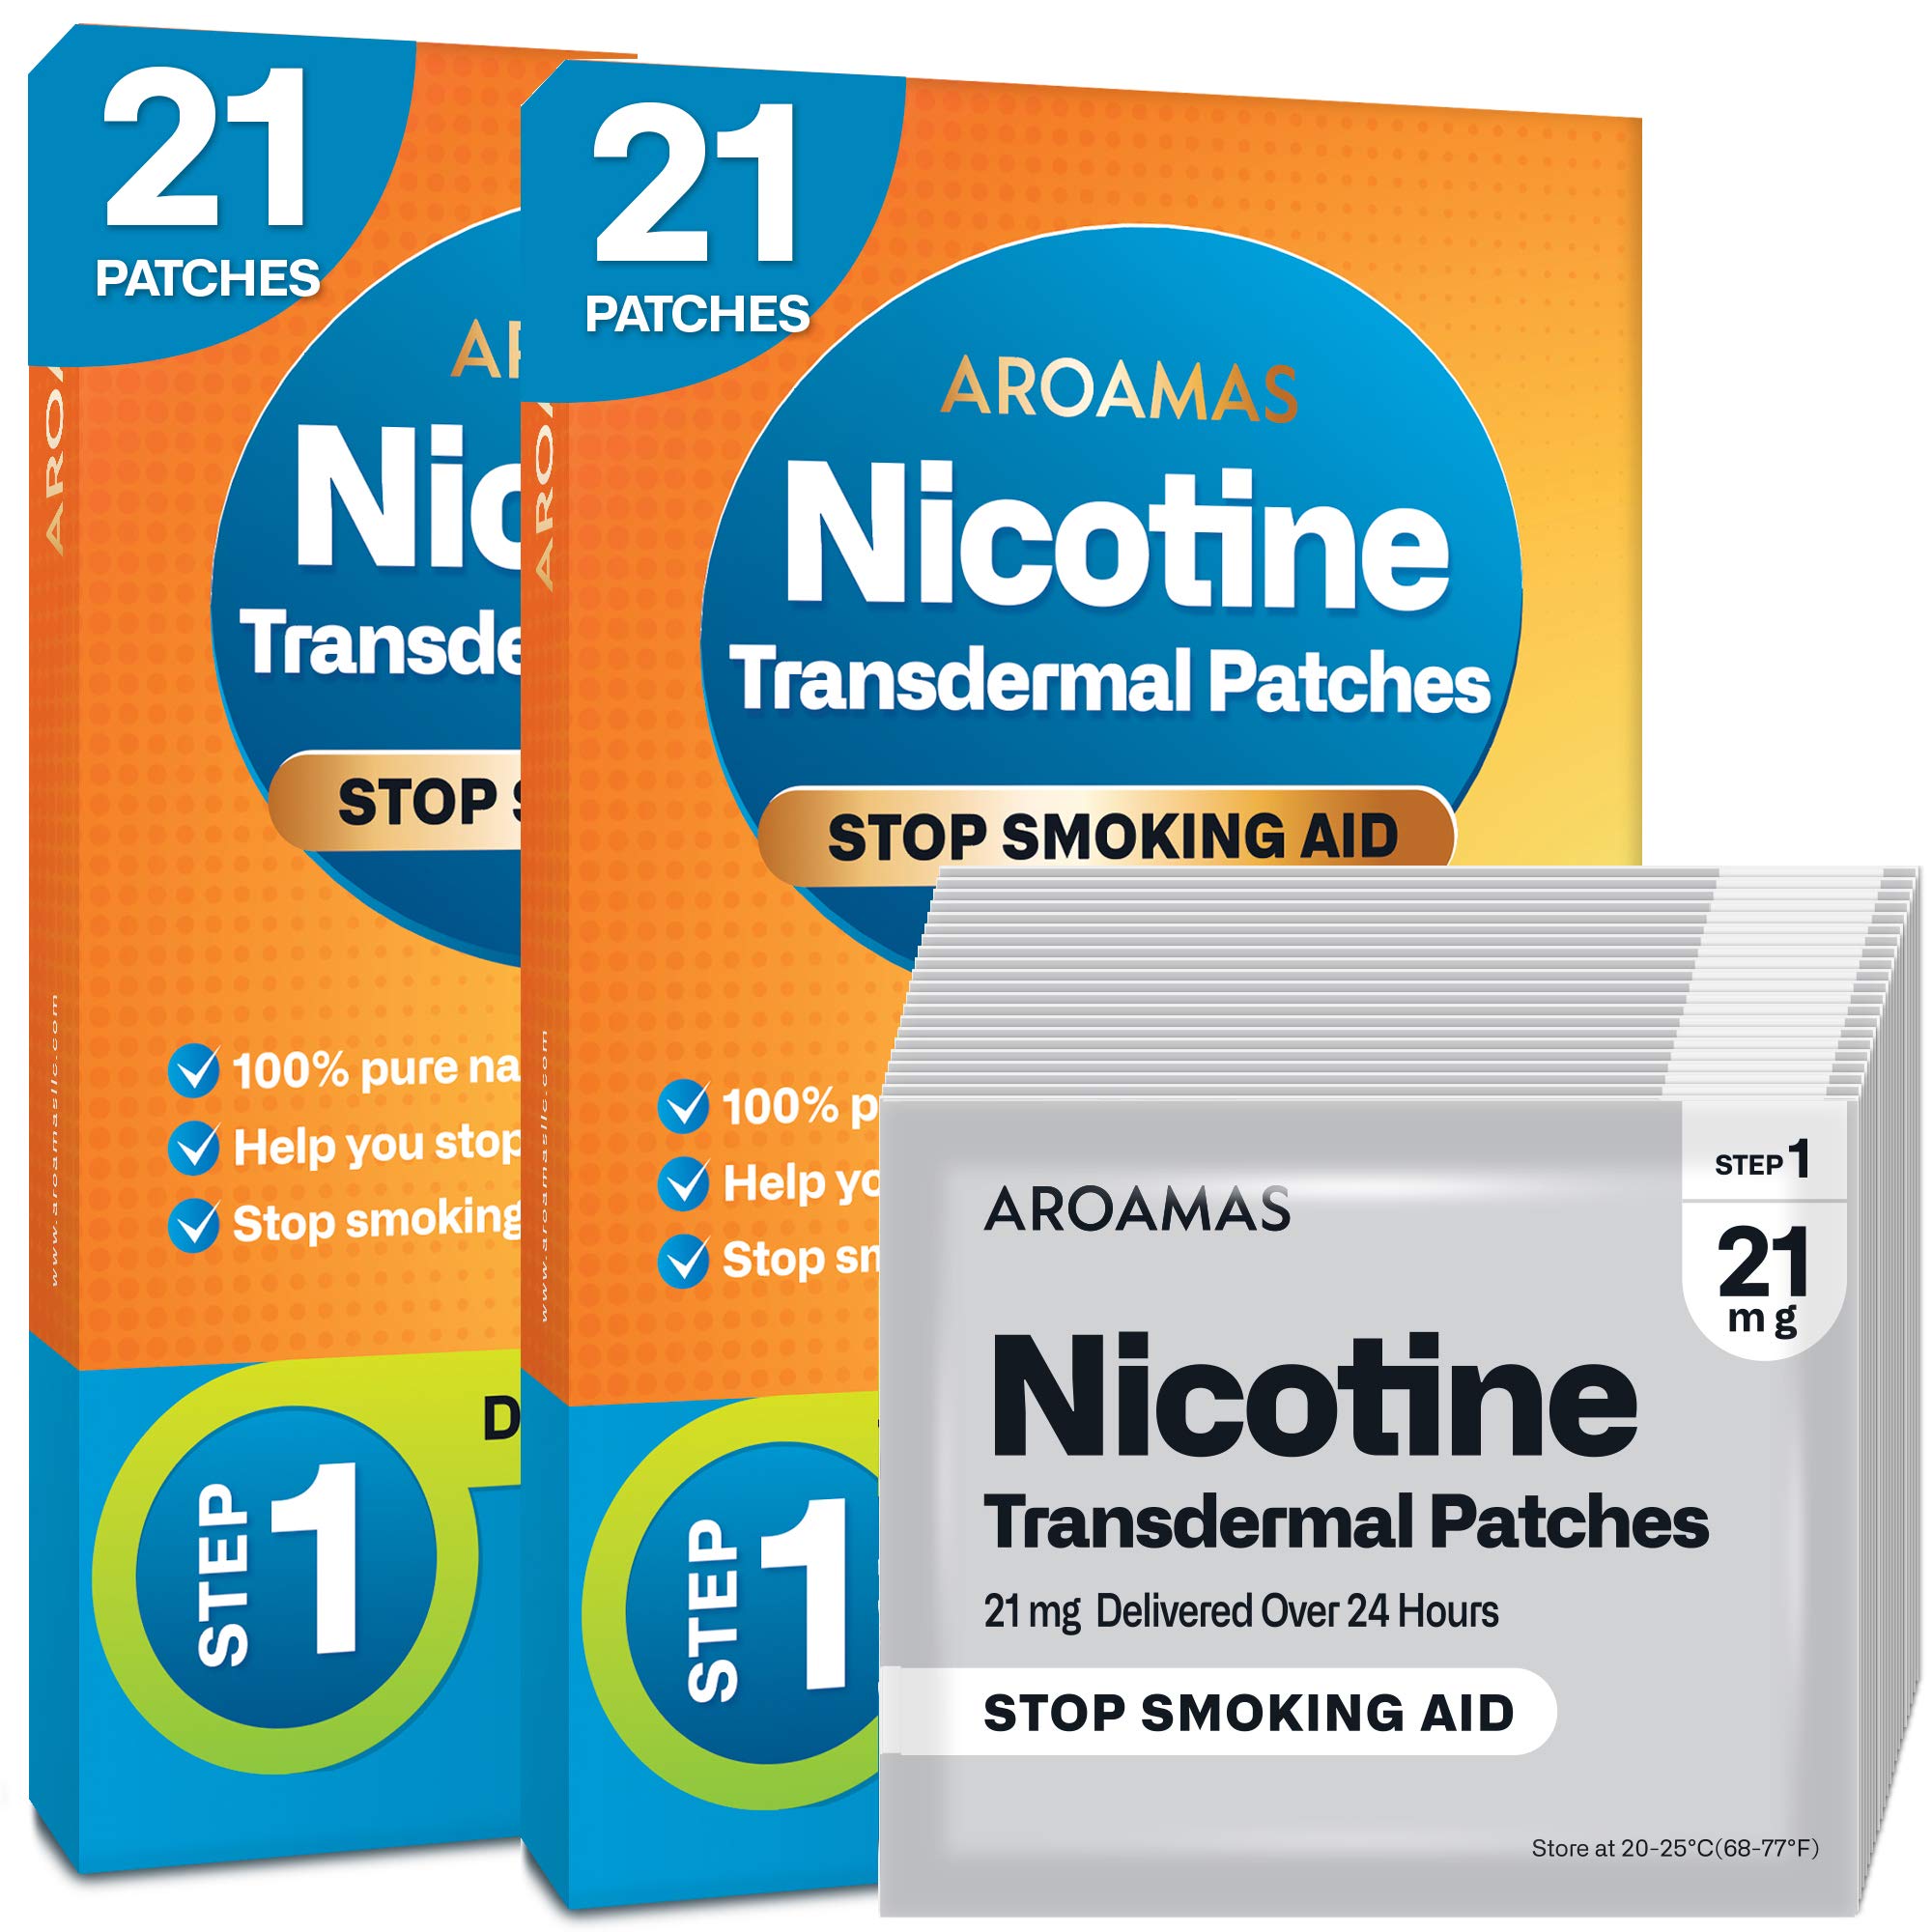 Aroamas Cot Aroamas Nicotine Patches to Help Quit Smoking, Stop Smoking - Delivered Over 24 Hours Nicotine Transdermal System to Stop Smokin